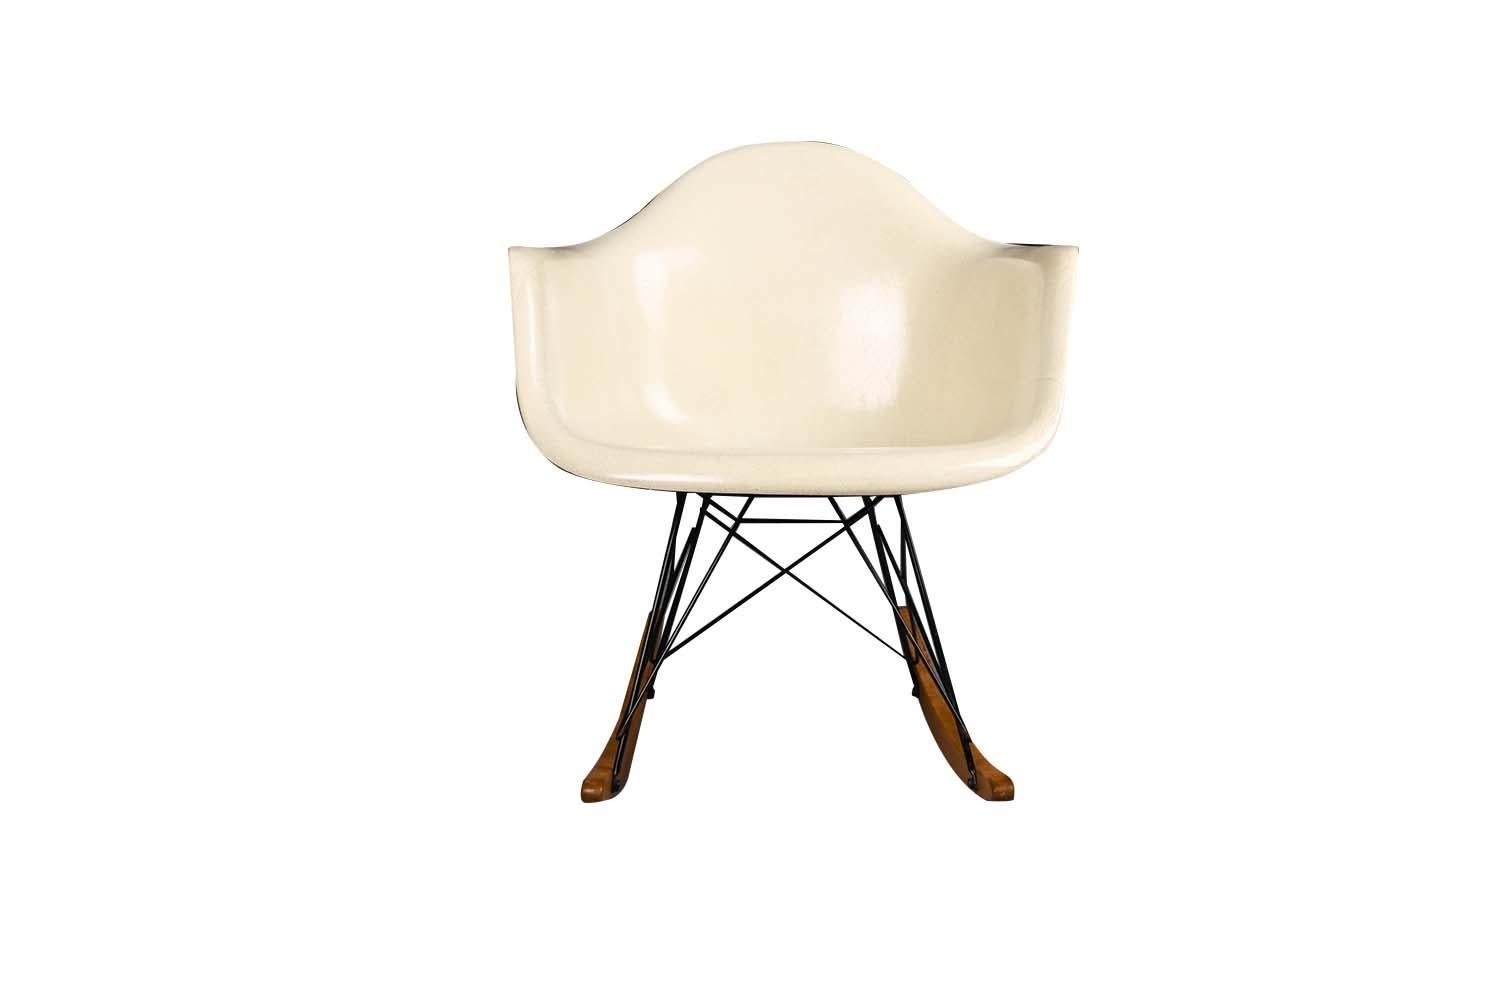 Authentischer, seltener Mid-Century Modern Schaukelstuhl der frühen RAR, entworfen von Charles und Ray Eames für Herman Miller. Dieser herrliche Schaukelstuhl aus der Mitte des Jahrhunderts wurde zwischen 1956 und 1959 hergestellt. Dies ist ein